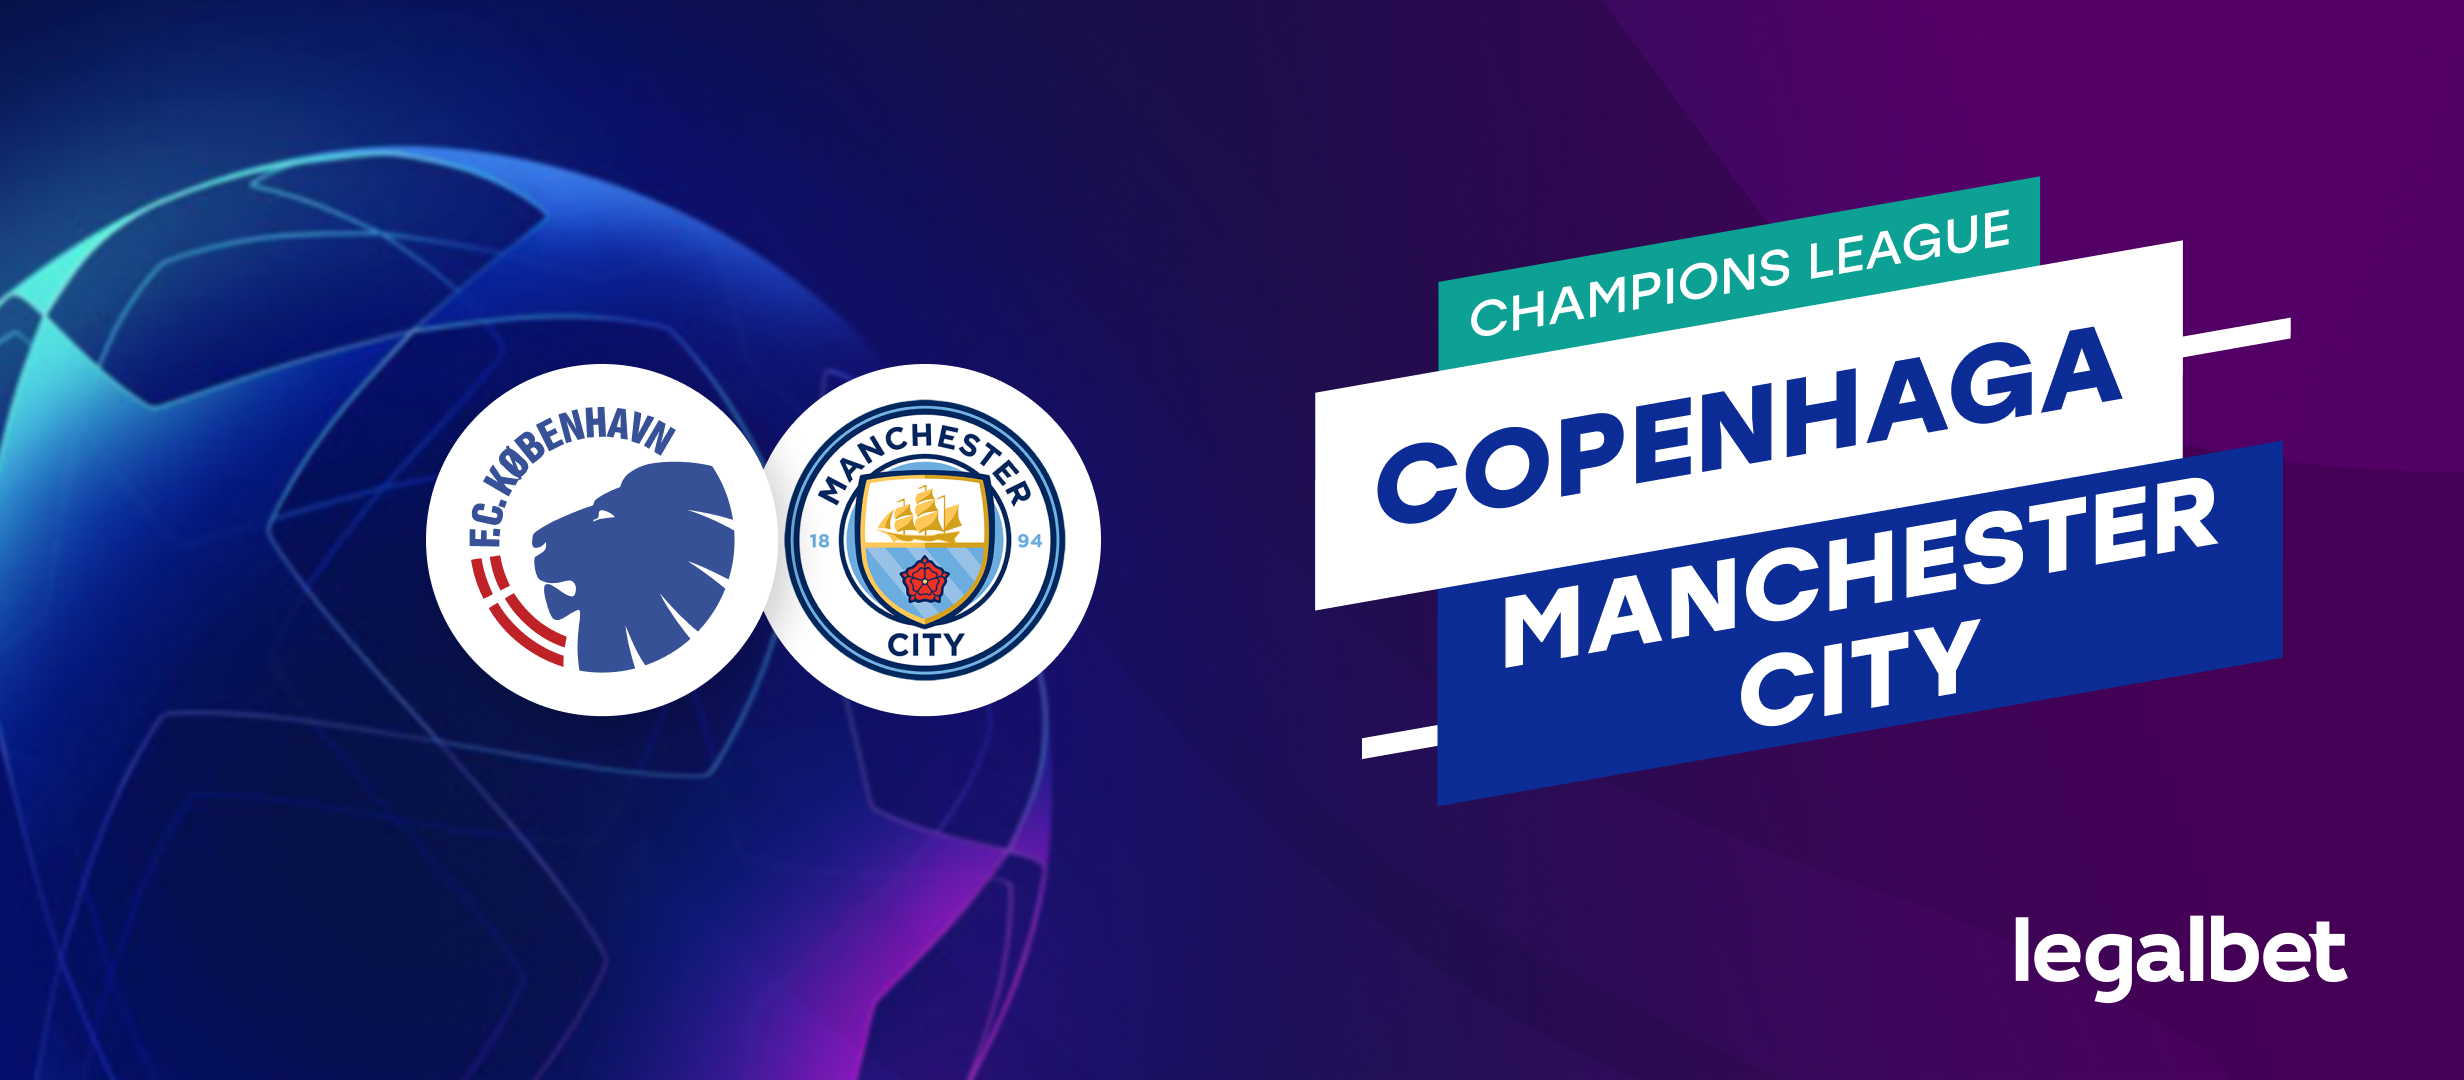 Copenhaga - Manchester City, ponturi la pariuri Champions League